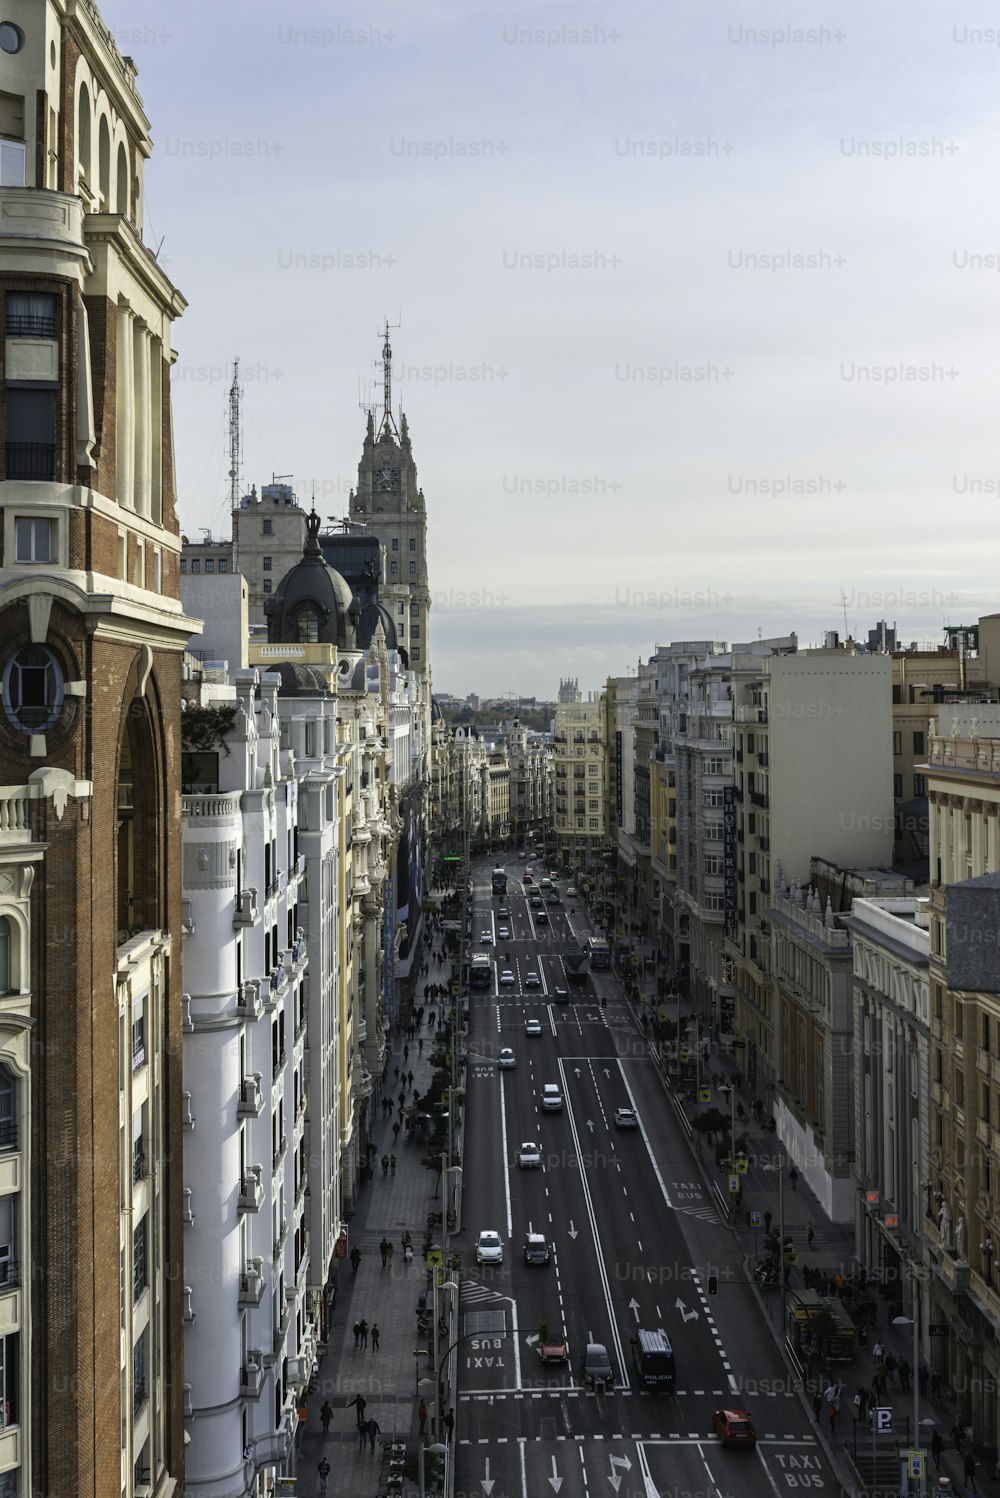 Vista aérea da Gran Vía e do horizonte de Madri da praça Callao em uma manhã de outono, com o edifício da Telefónica e outros marcos a serem reconhecidos ao fundo.